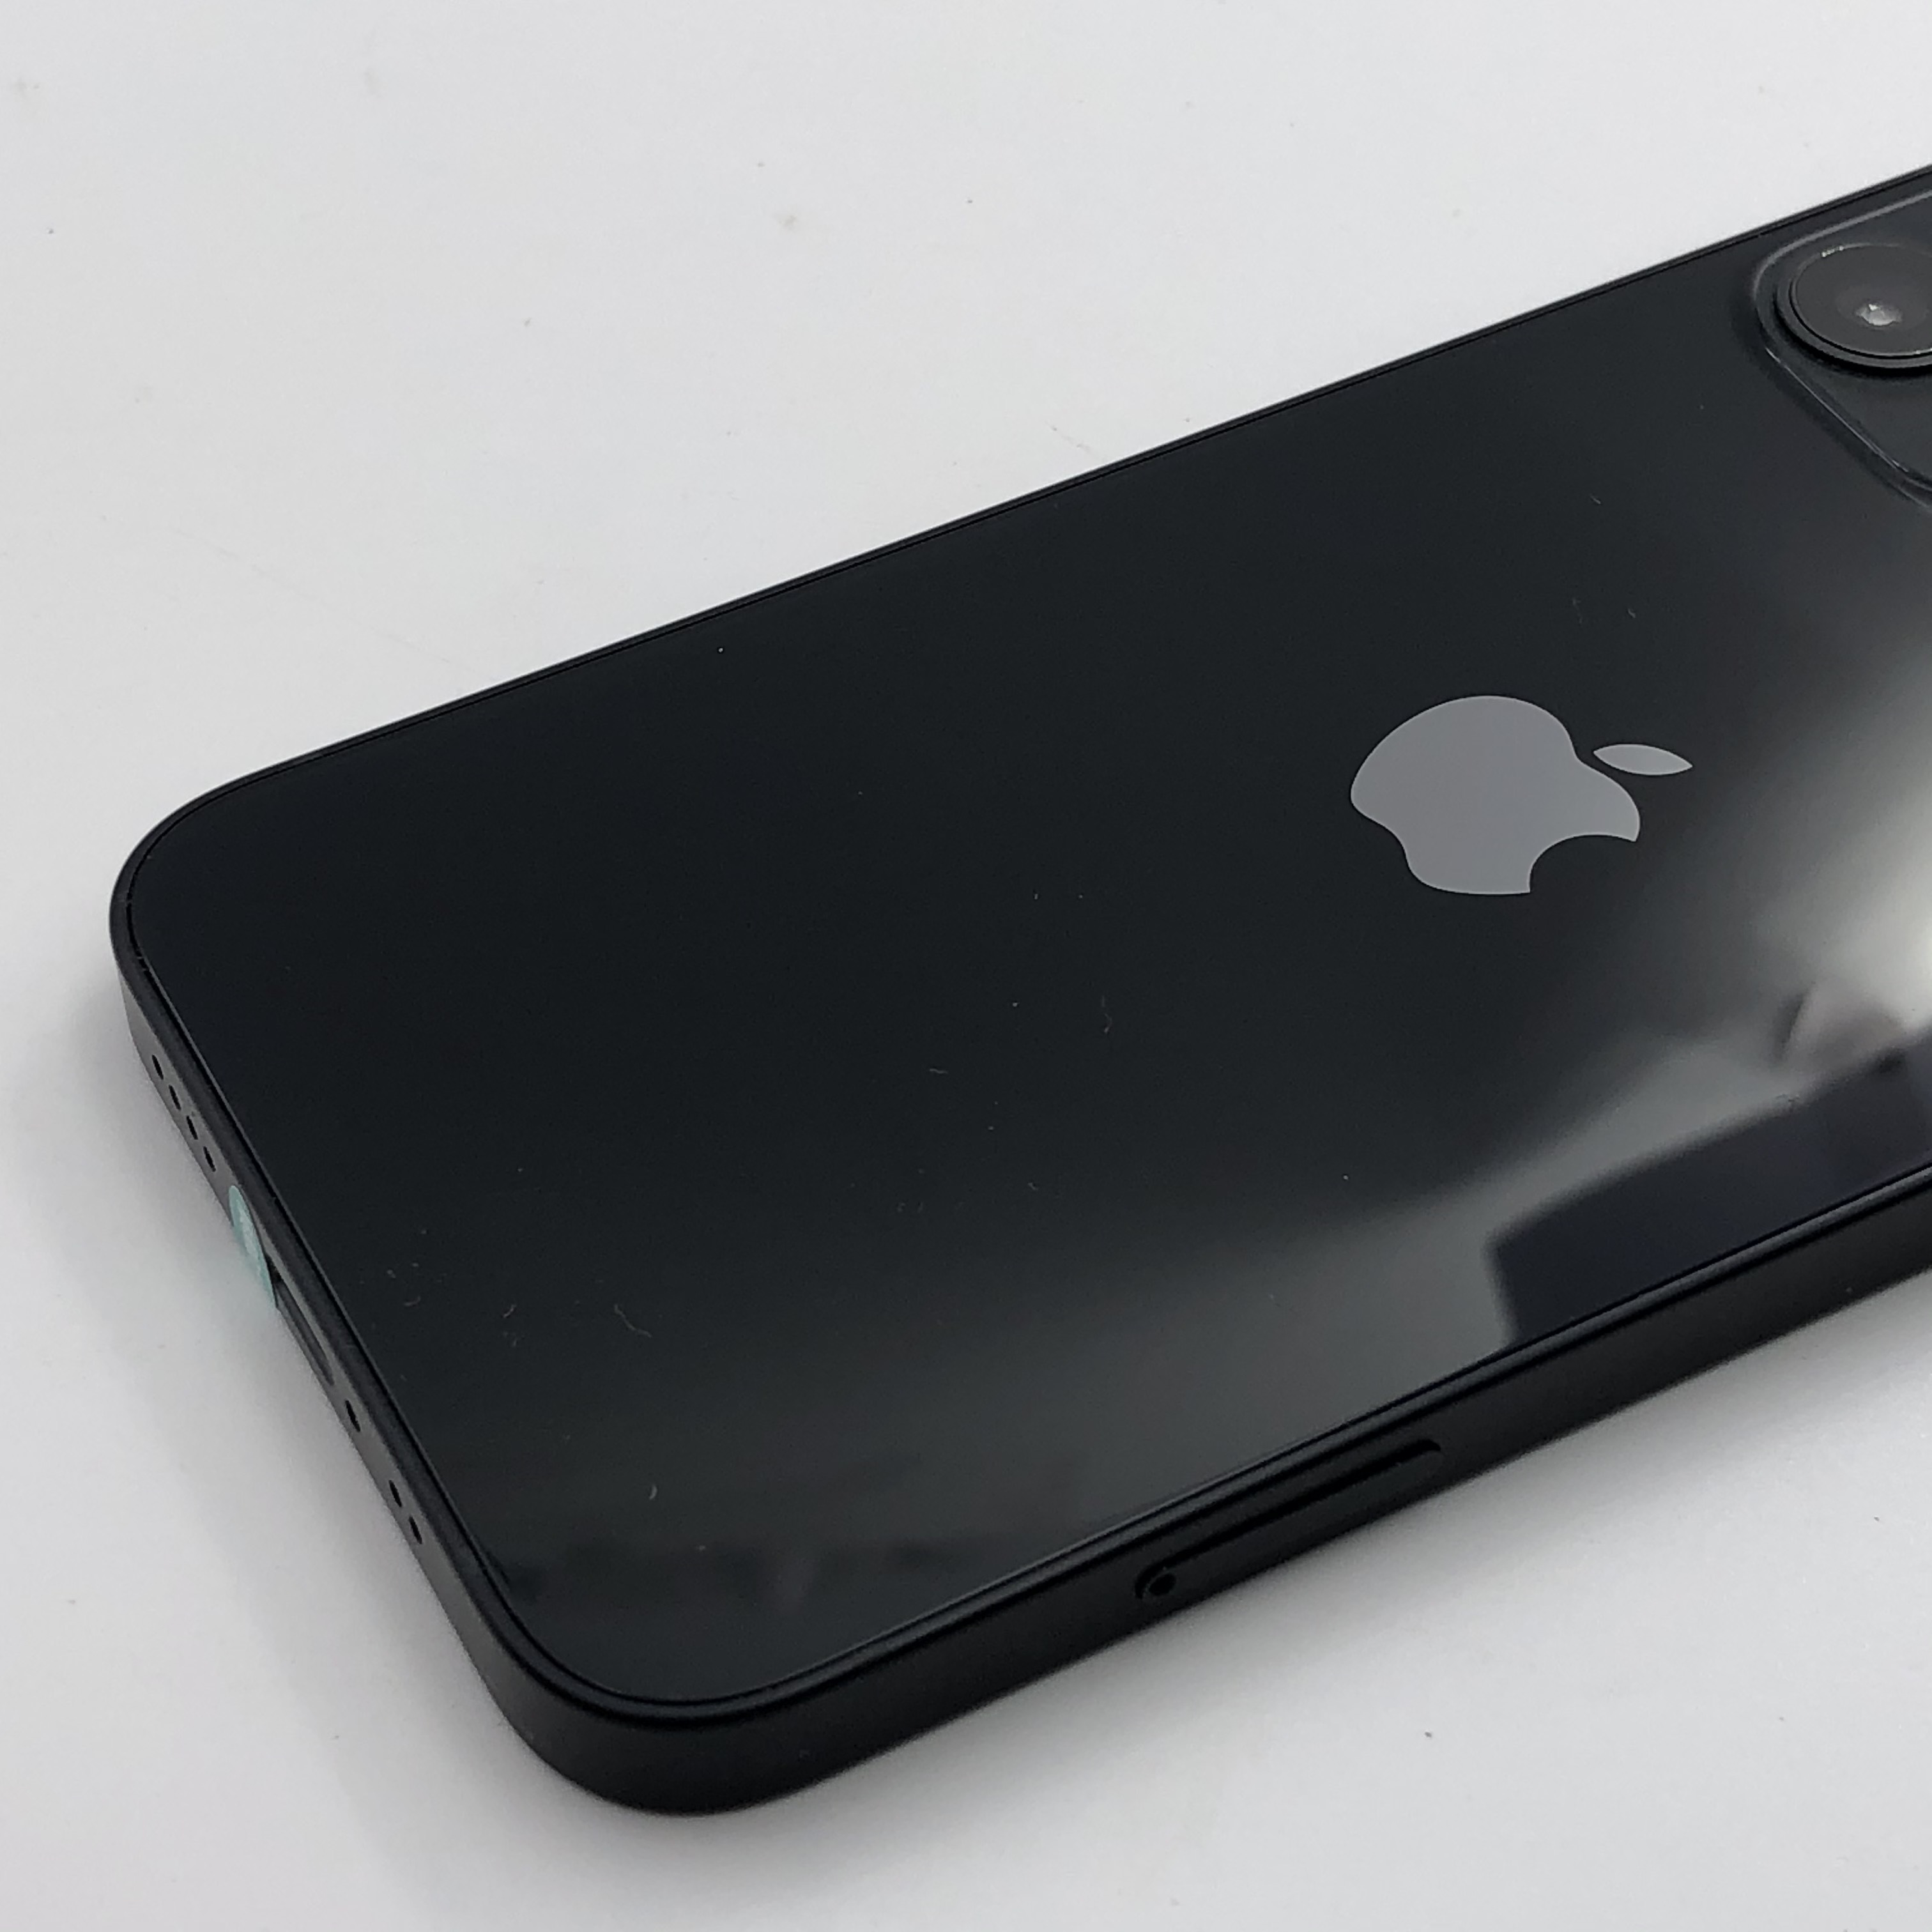 好看苹果颜色手机推荐_iphone最好看的颜色_苹果手机颜色哪个好看